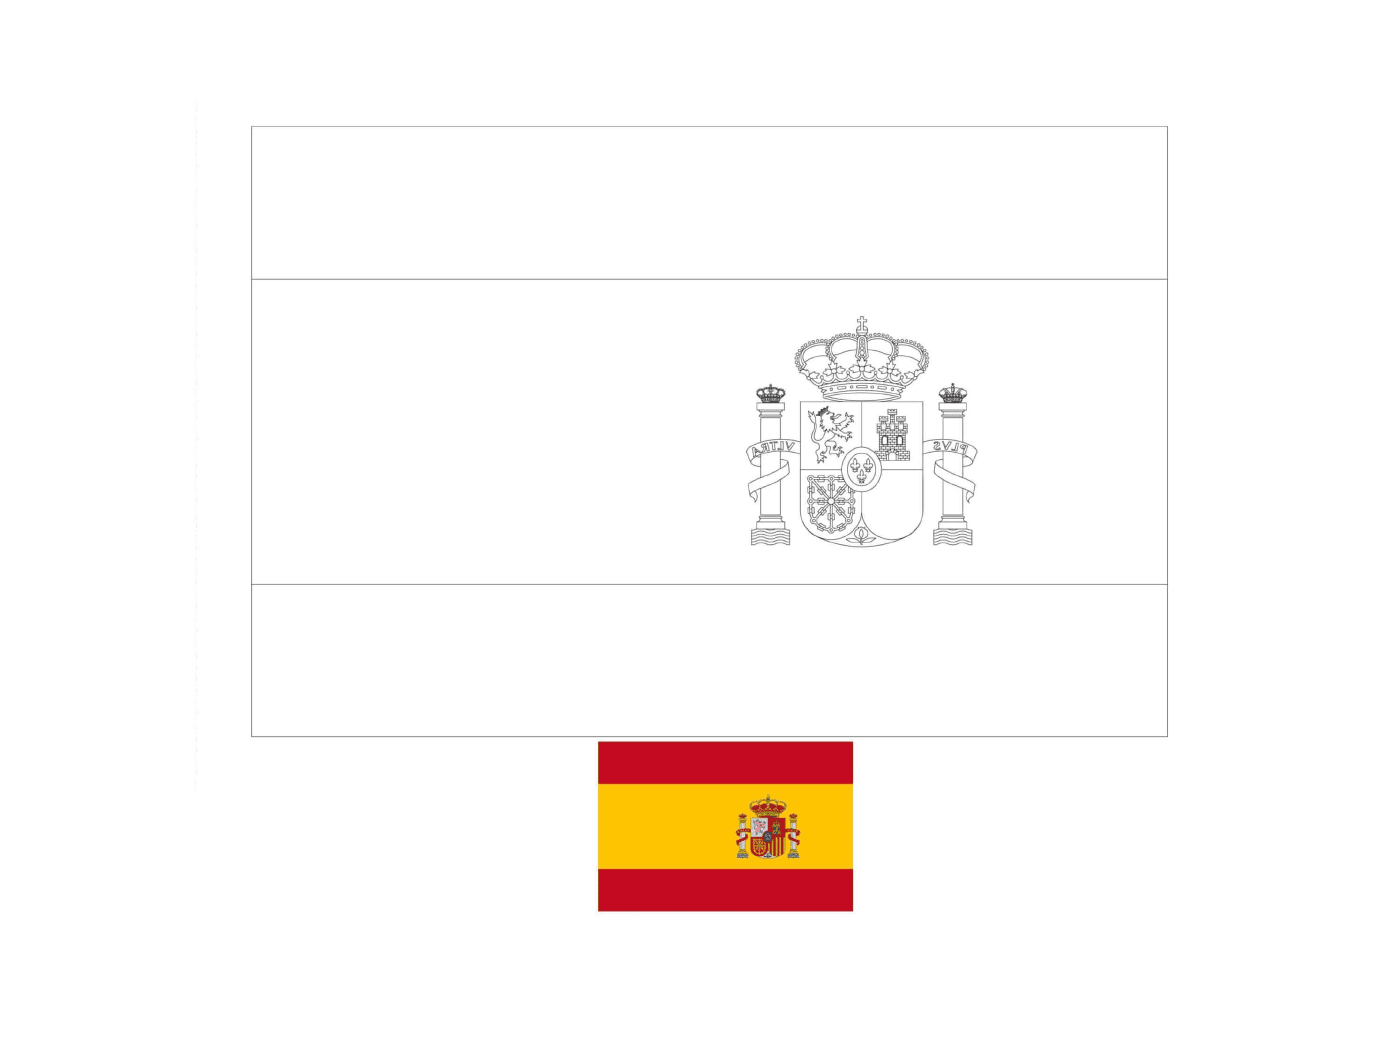  用彩色绘制的西班牙国旗 